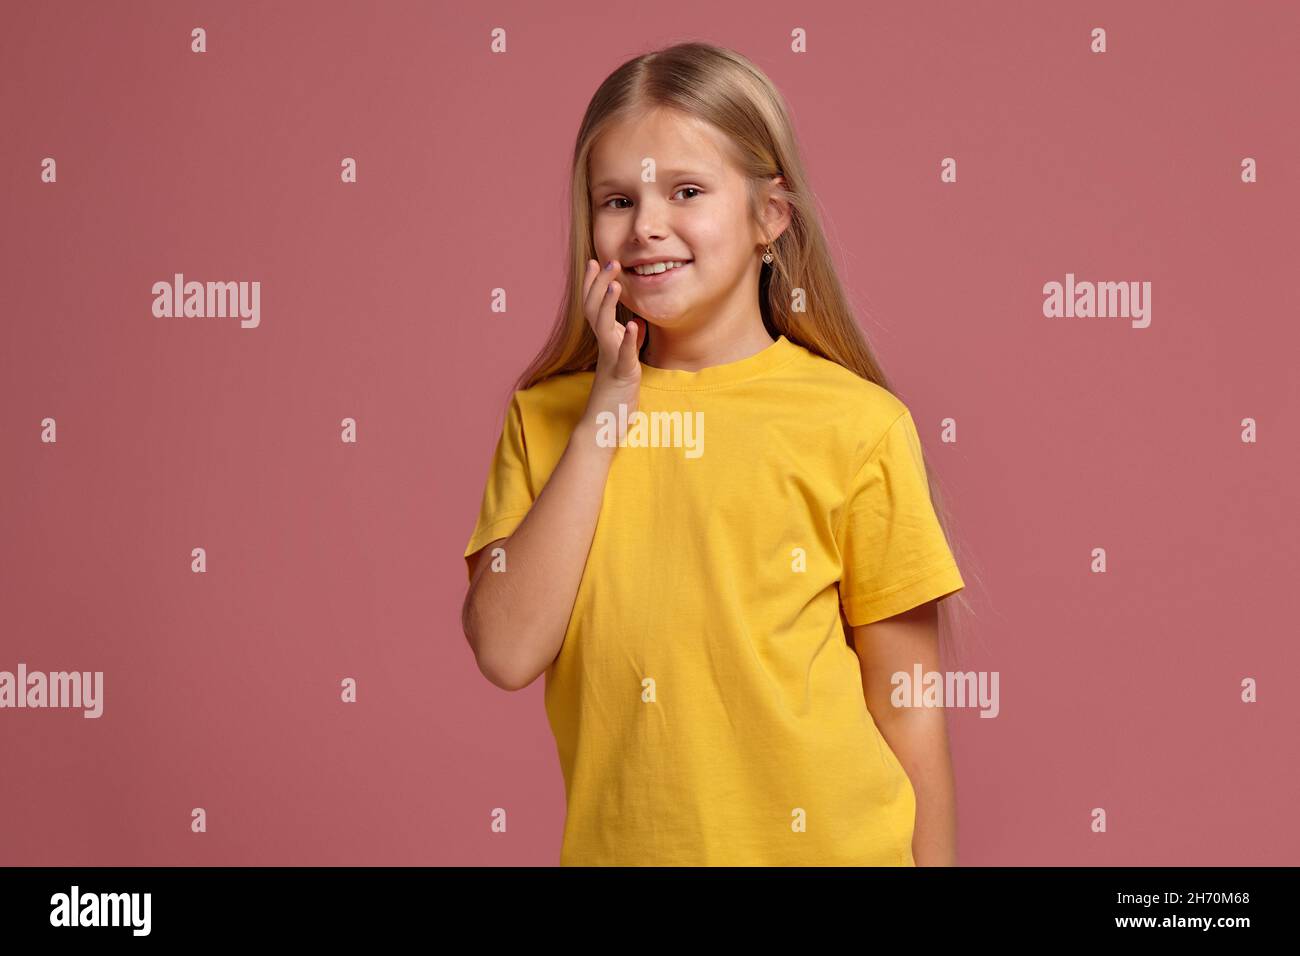 niña pequeña en una camiseta amarilla, con aspecto shyly